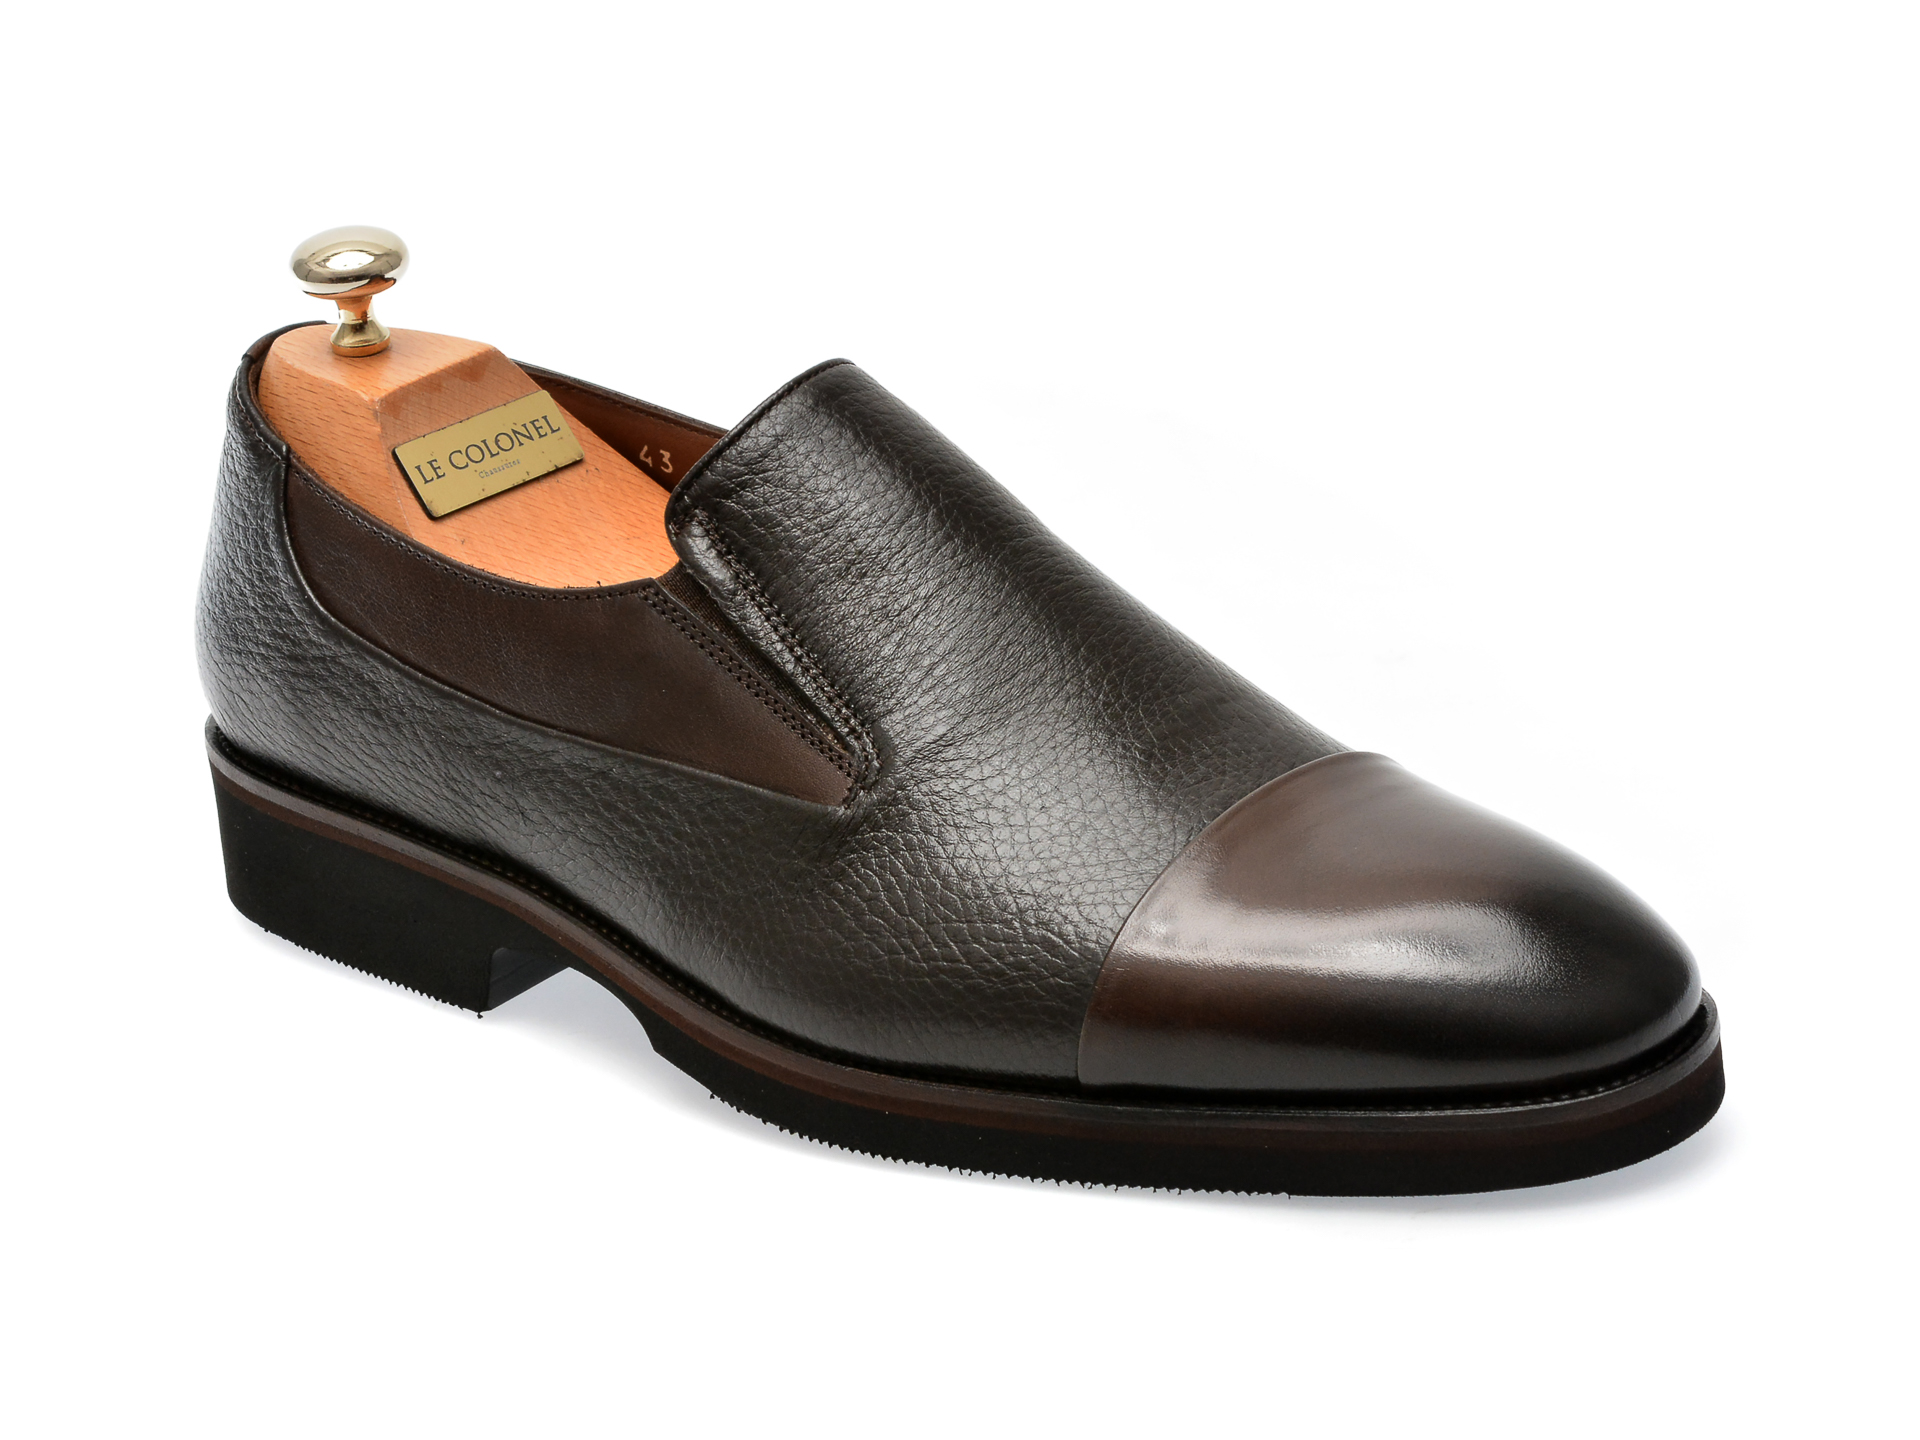 Pantofi LE COLONEL maro, 49879, din piele naturala